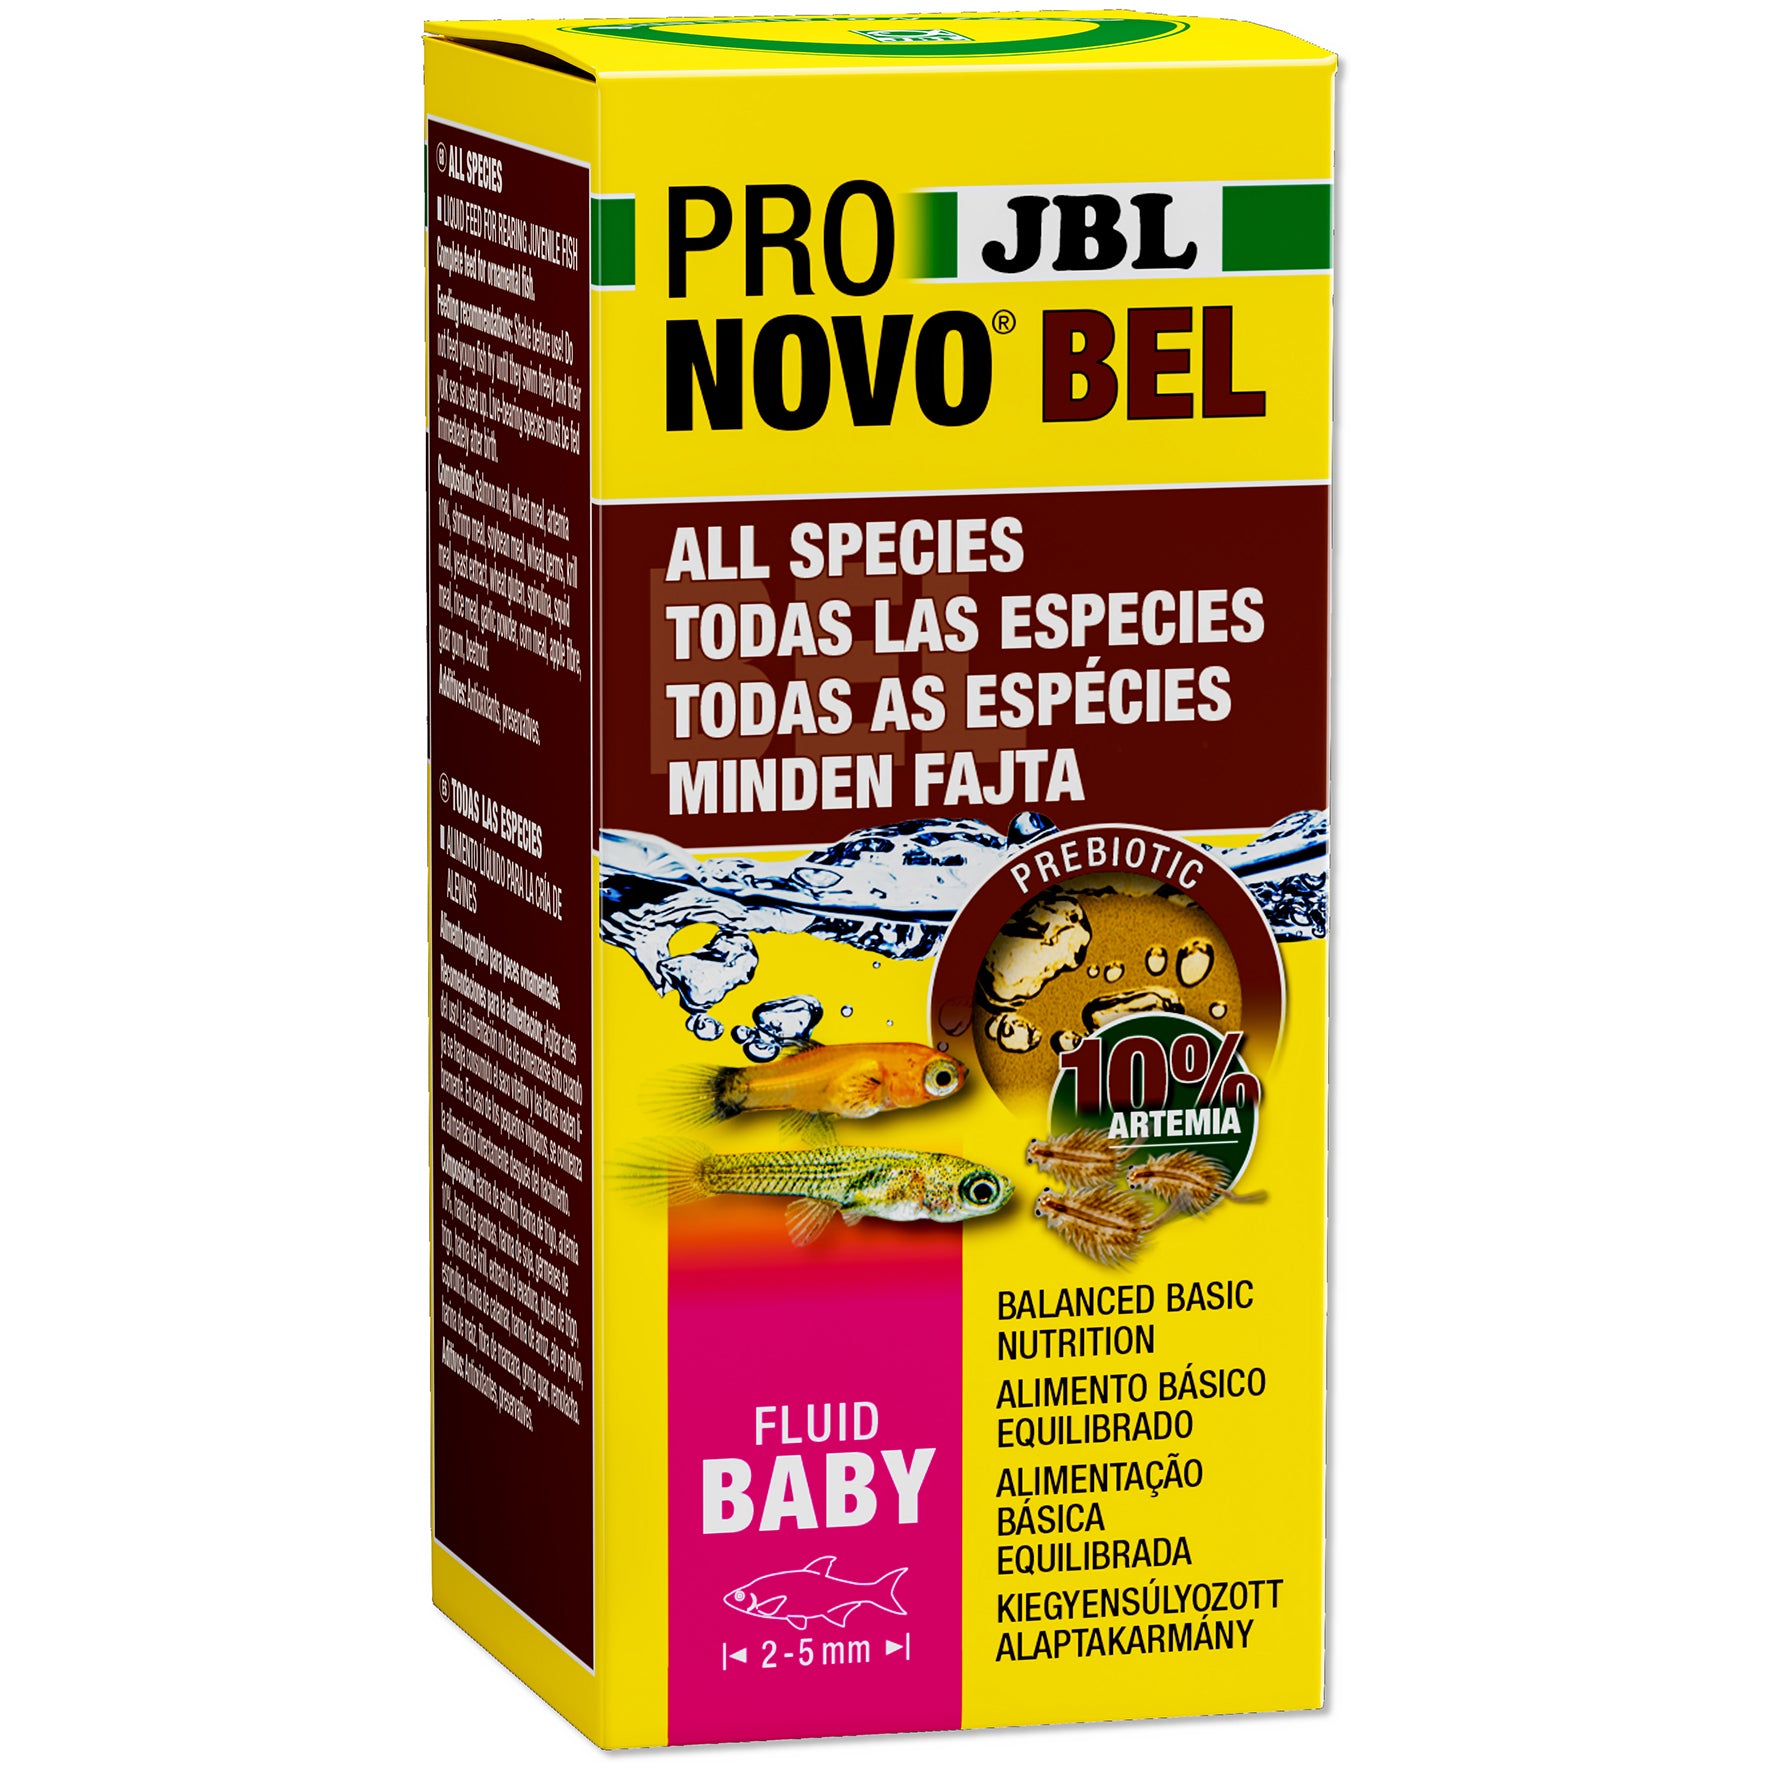 JBL ProNOVO Bel liquid fish fry food 